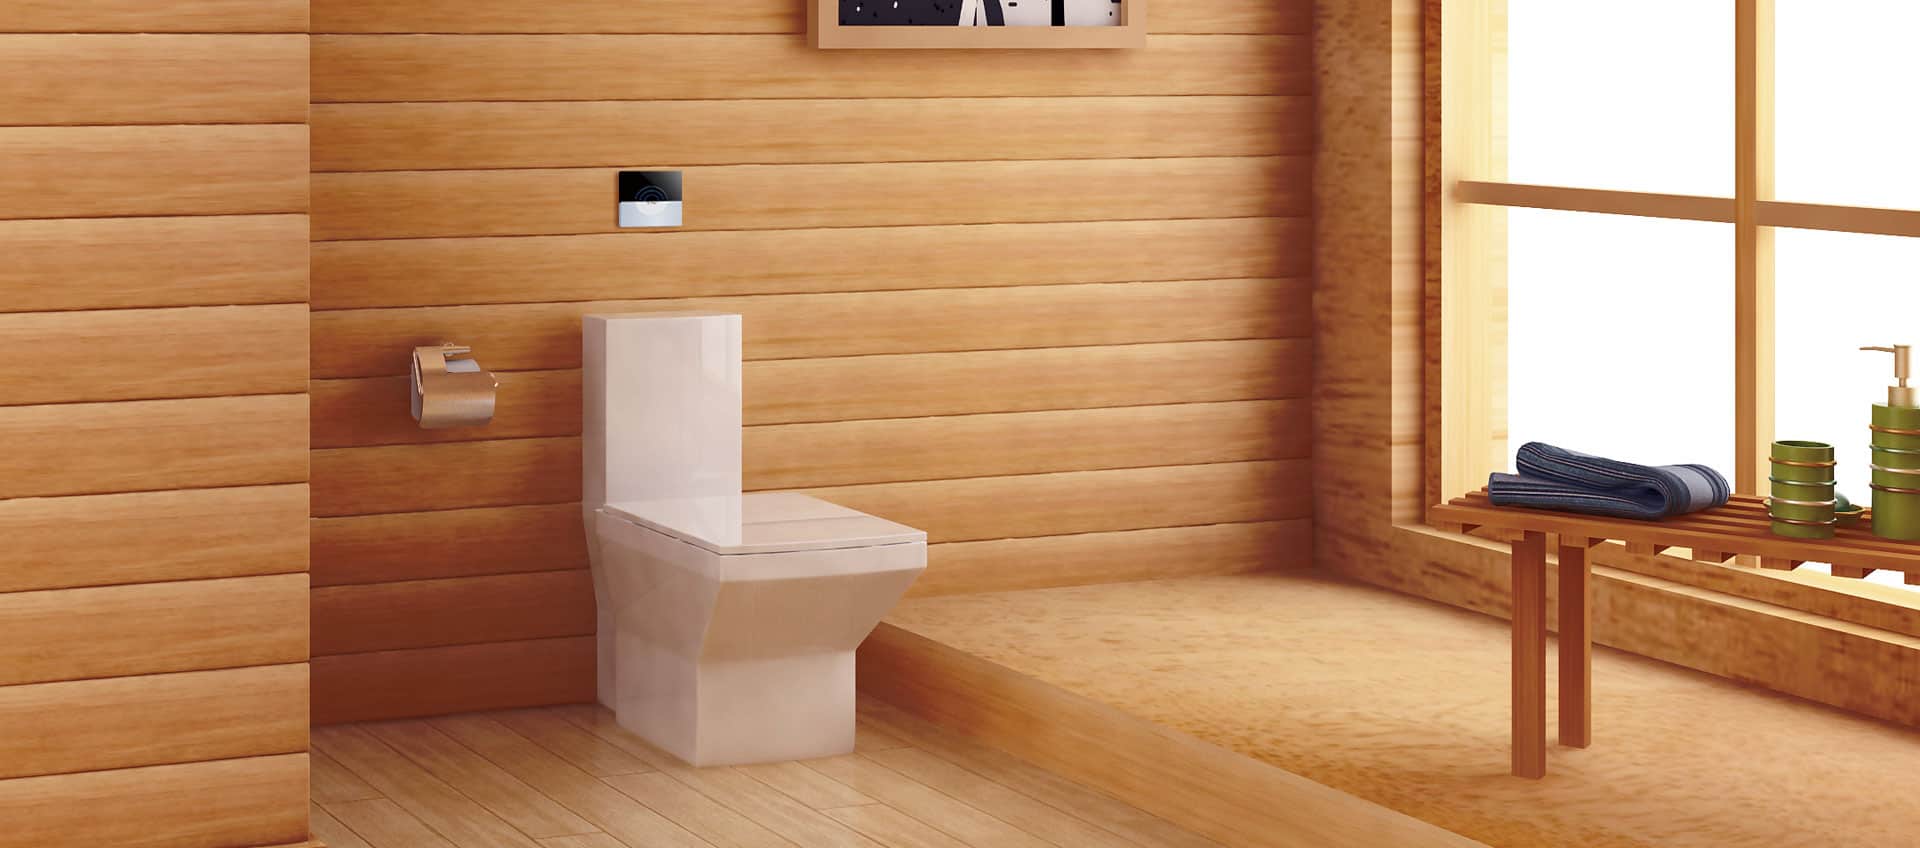 Touchless Toilet Flusher,Infrared Sensor Automatic Toilet Flusher